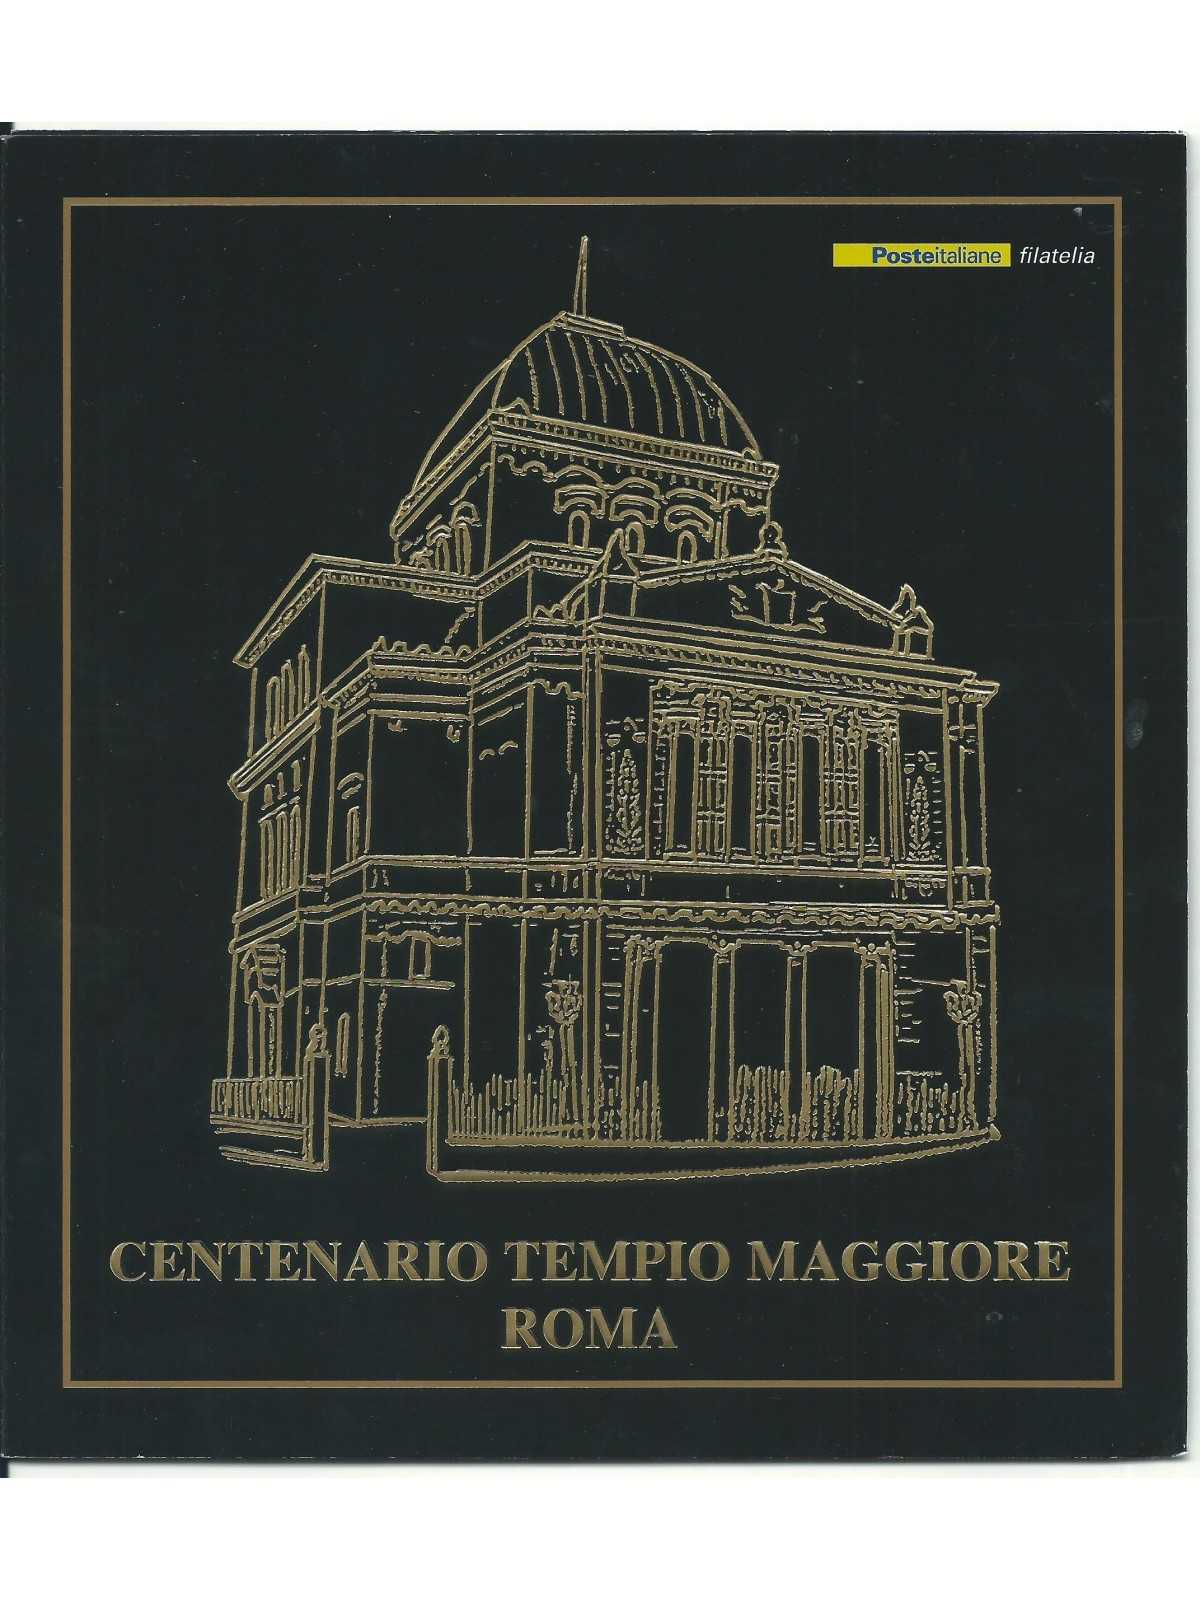 2004 ITALIA REPUBBLICA FOLDER CENTENARIO TEMPIO MAGGIORE ROMA MF26791